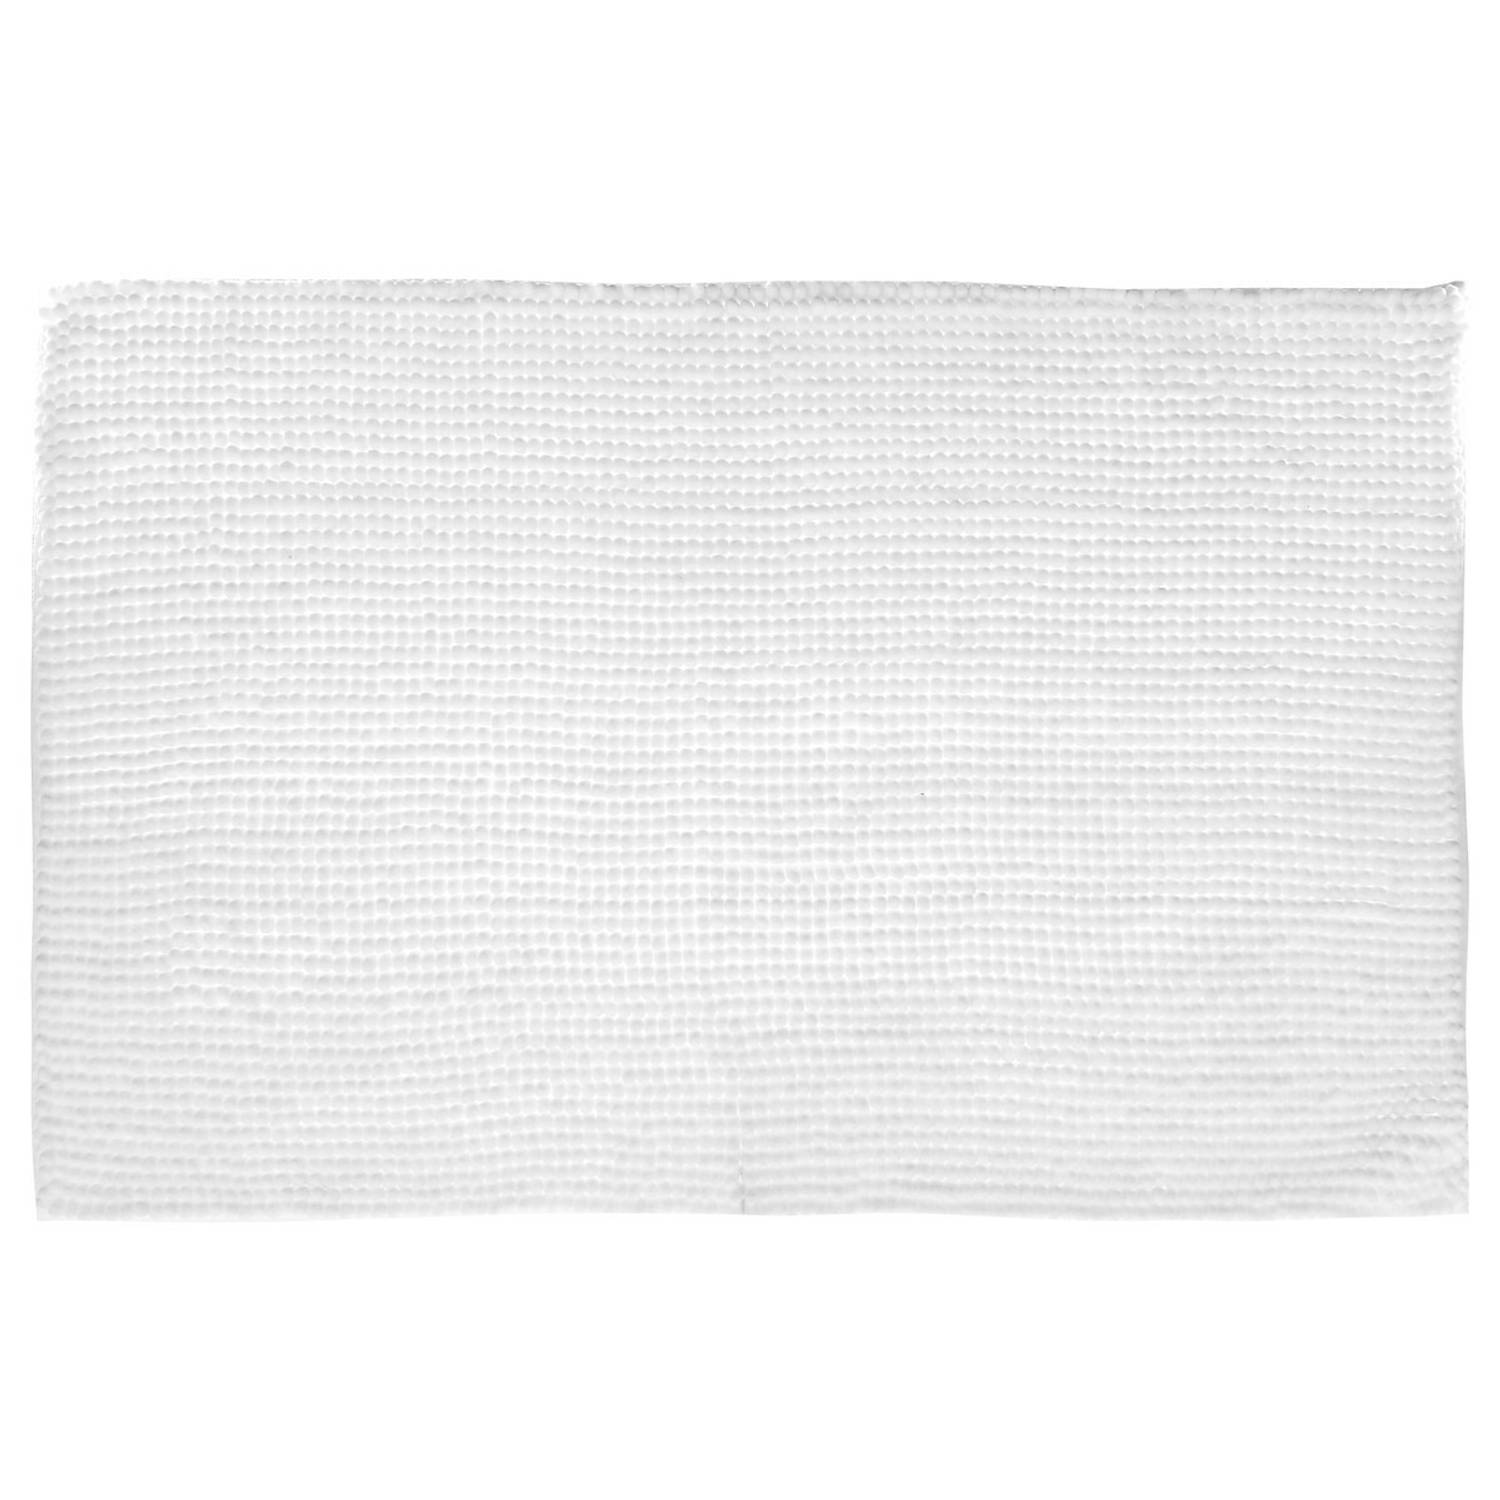 Badkamerkleedje-badmat voor op de vloer wit 50 x 80 cm Badmatjes